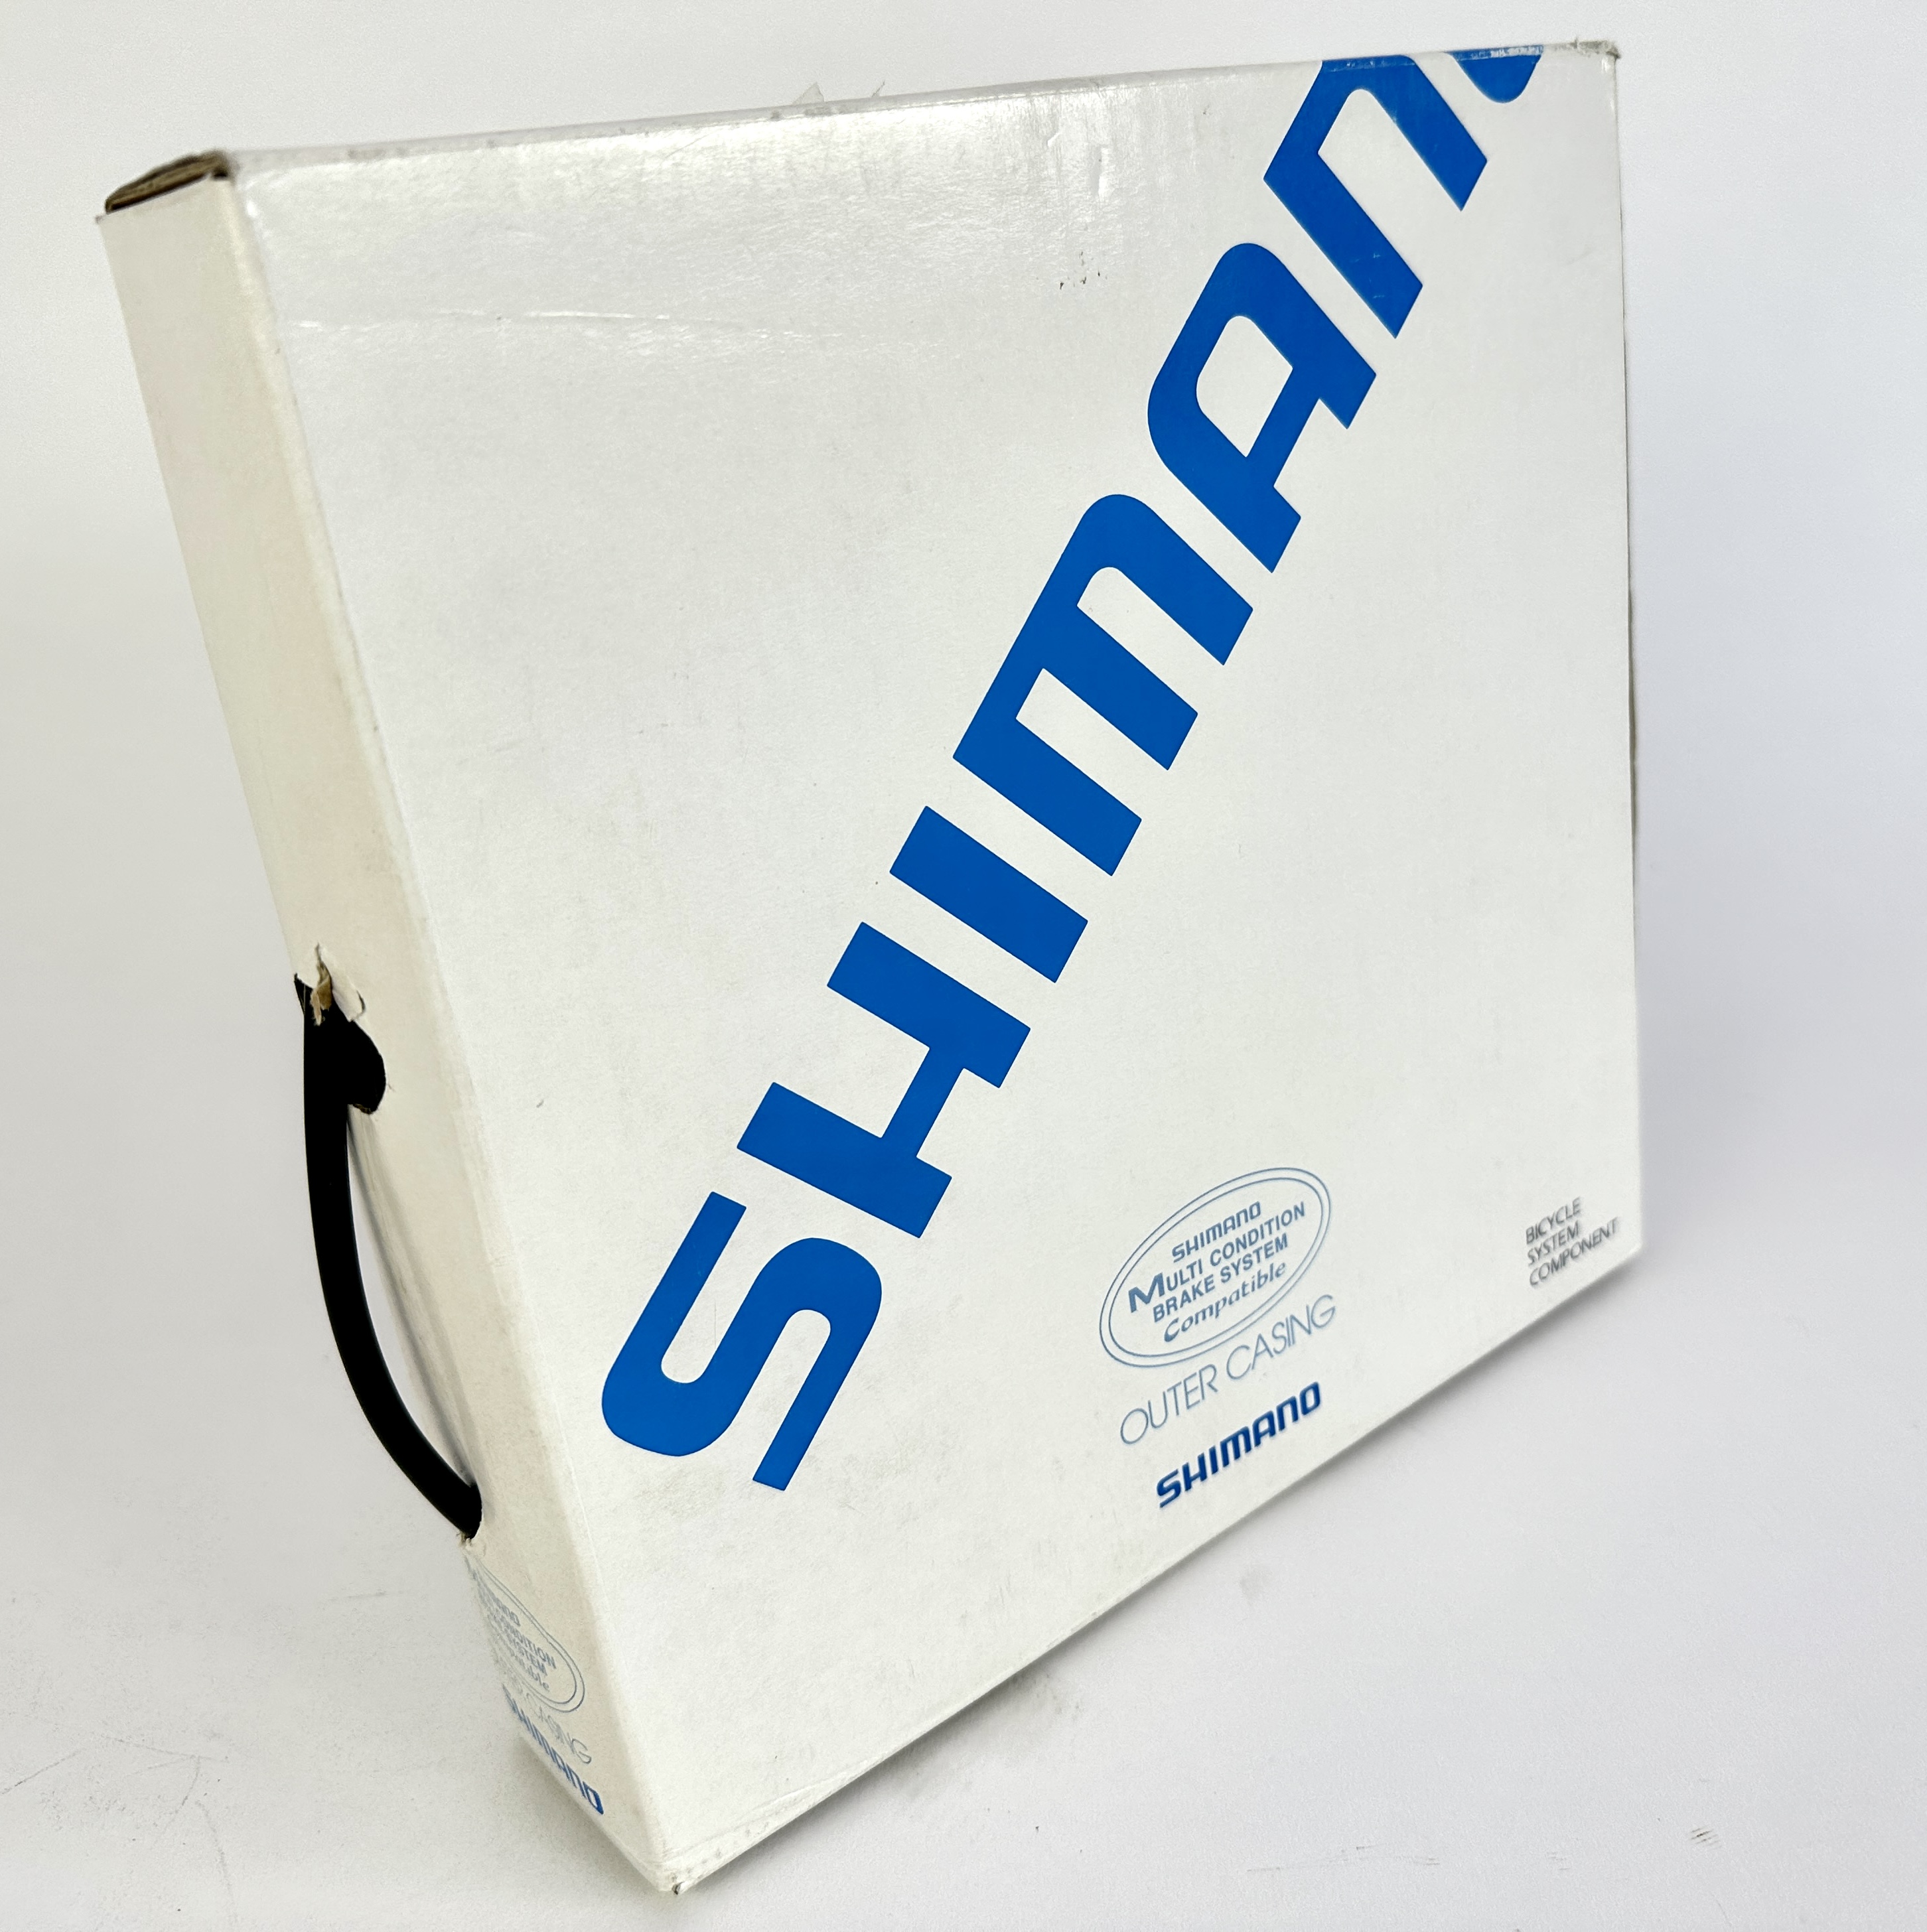 Shimano Japan cavo freno esterno nero 25 m 6 mm  Prodotto in Giappone